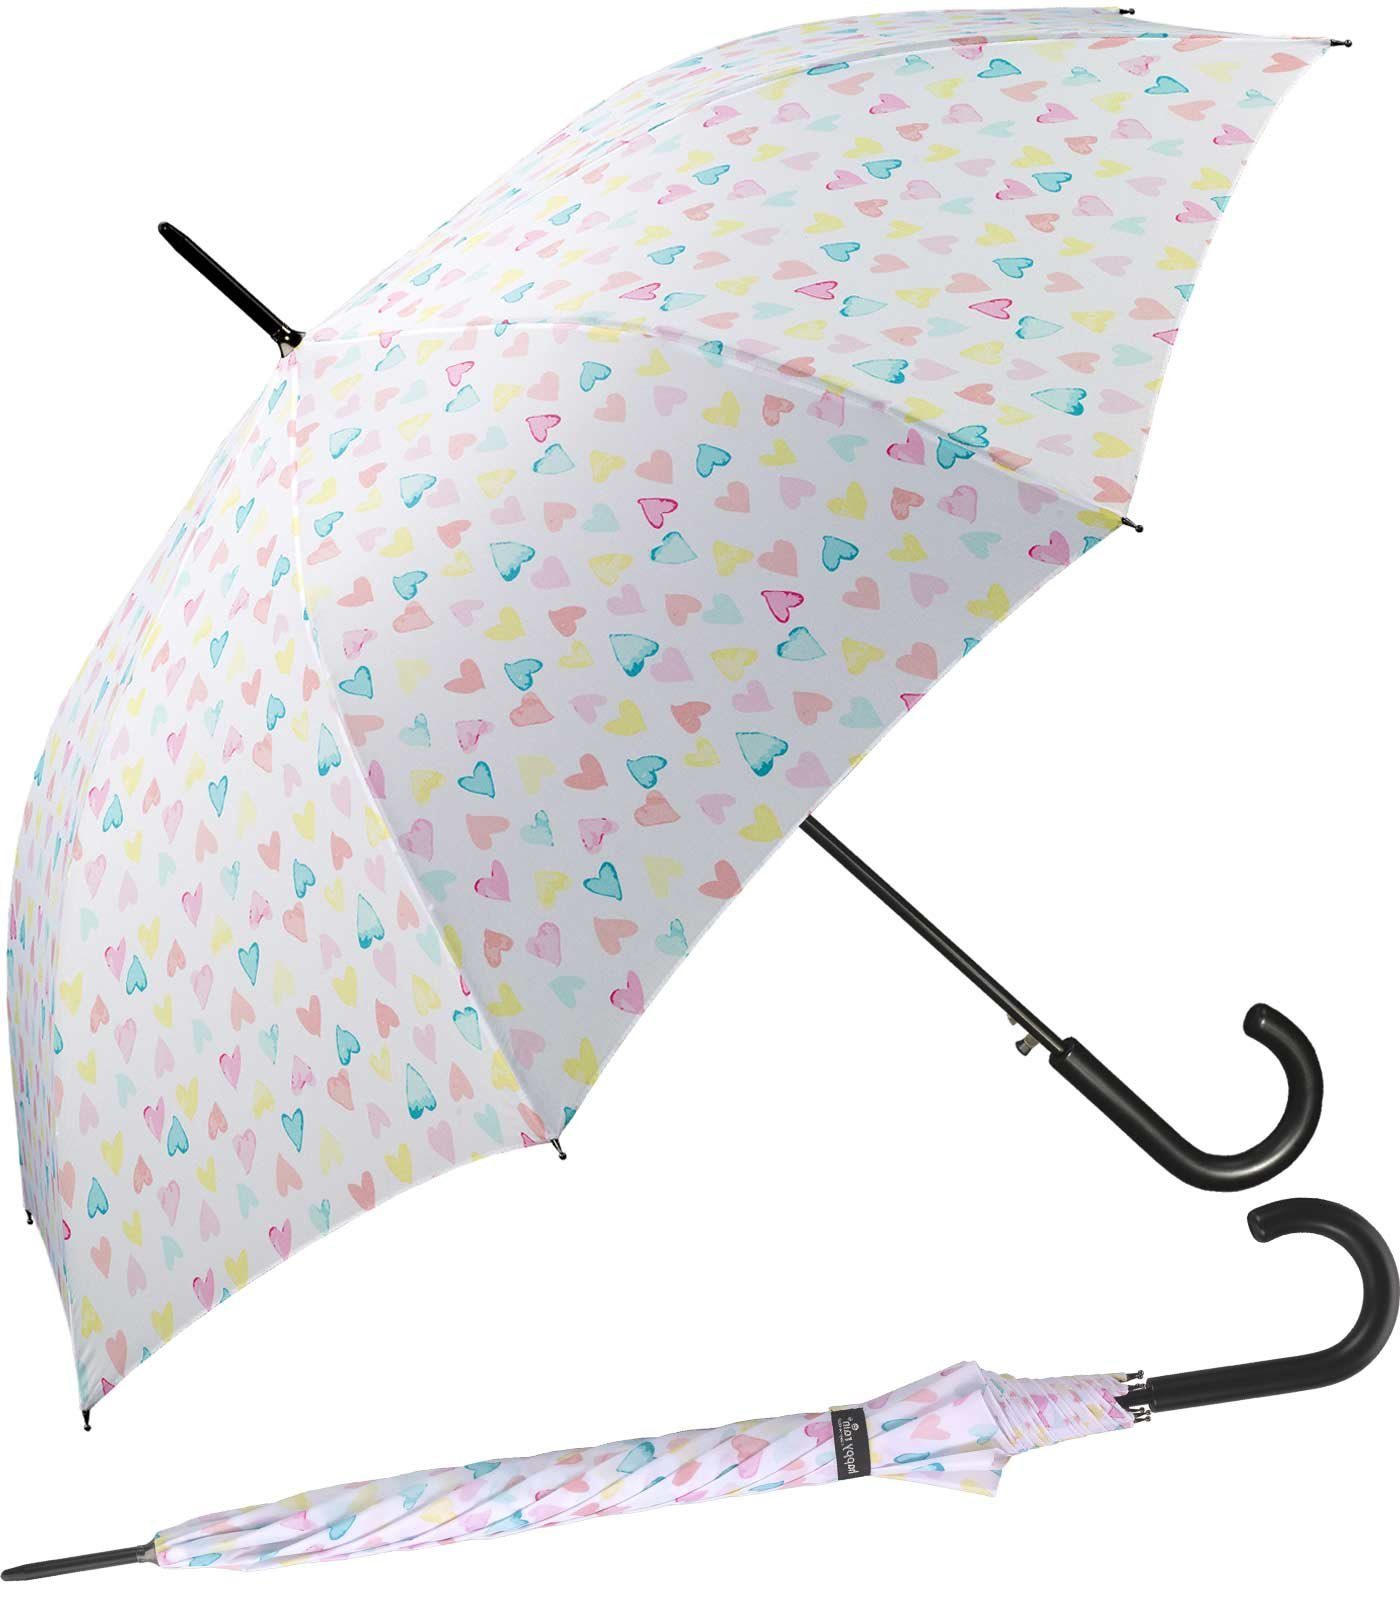 HAPPY RAIN Langregenschirm großer Damen-Regenschirm mit Auf-Automatik, zauberhafte Herzen in zarten Pastellfarben